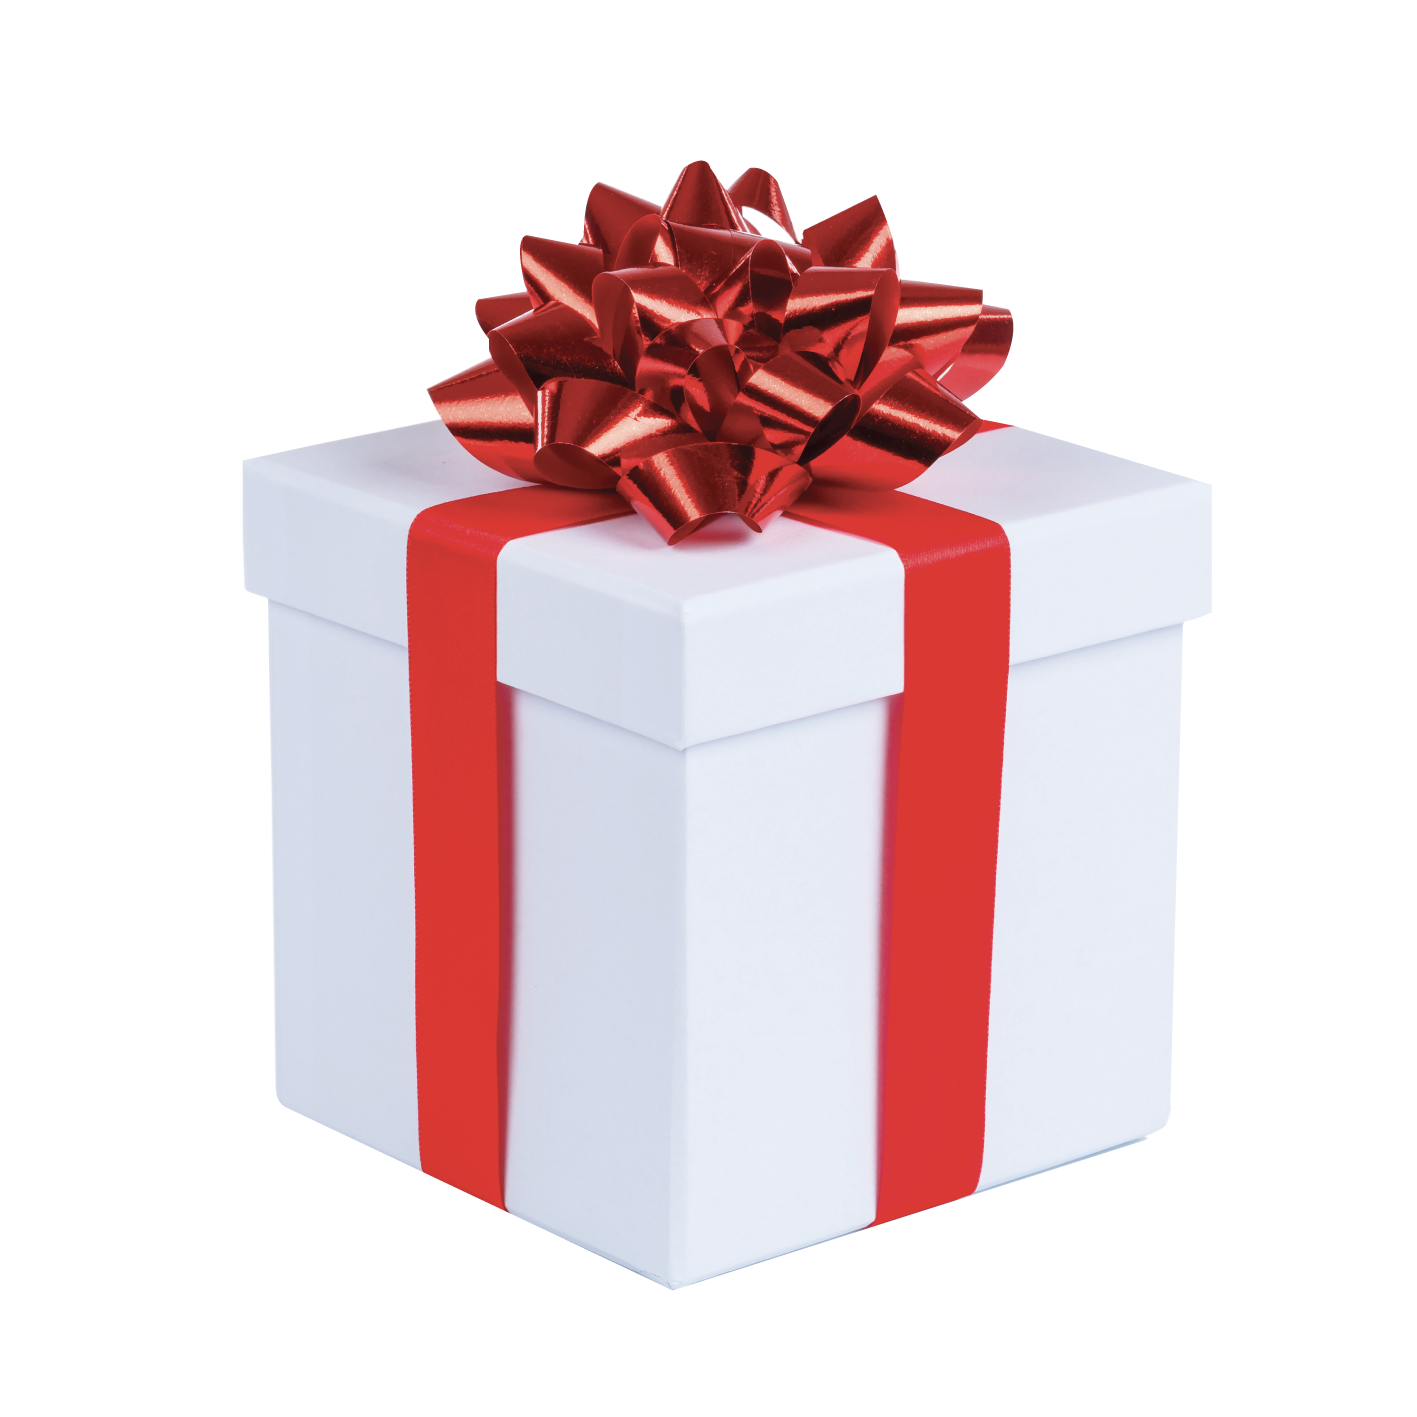 Boîte cadeaux à rabat Père Noël, Pochette cadeaux noël rouge à velcro